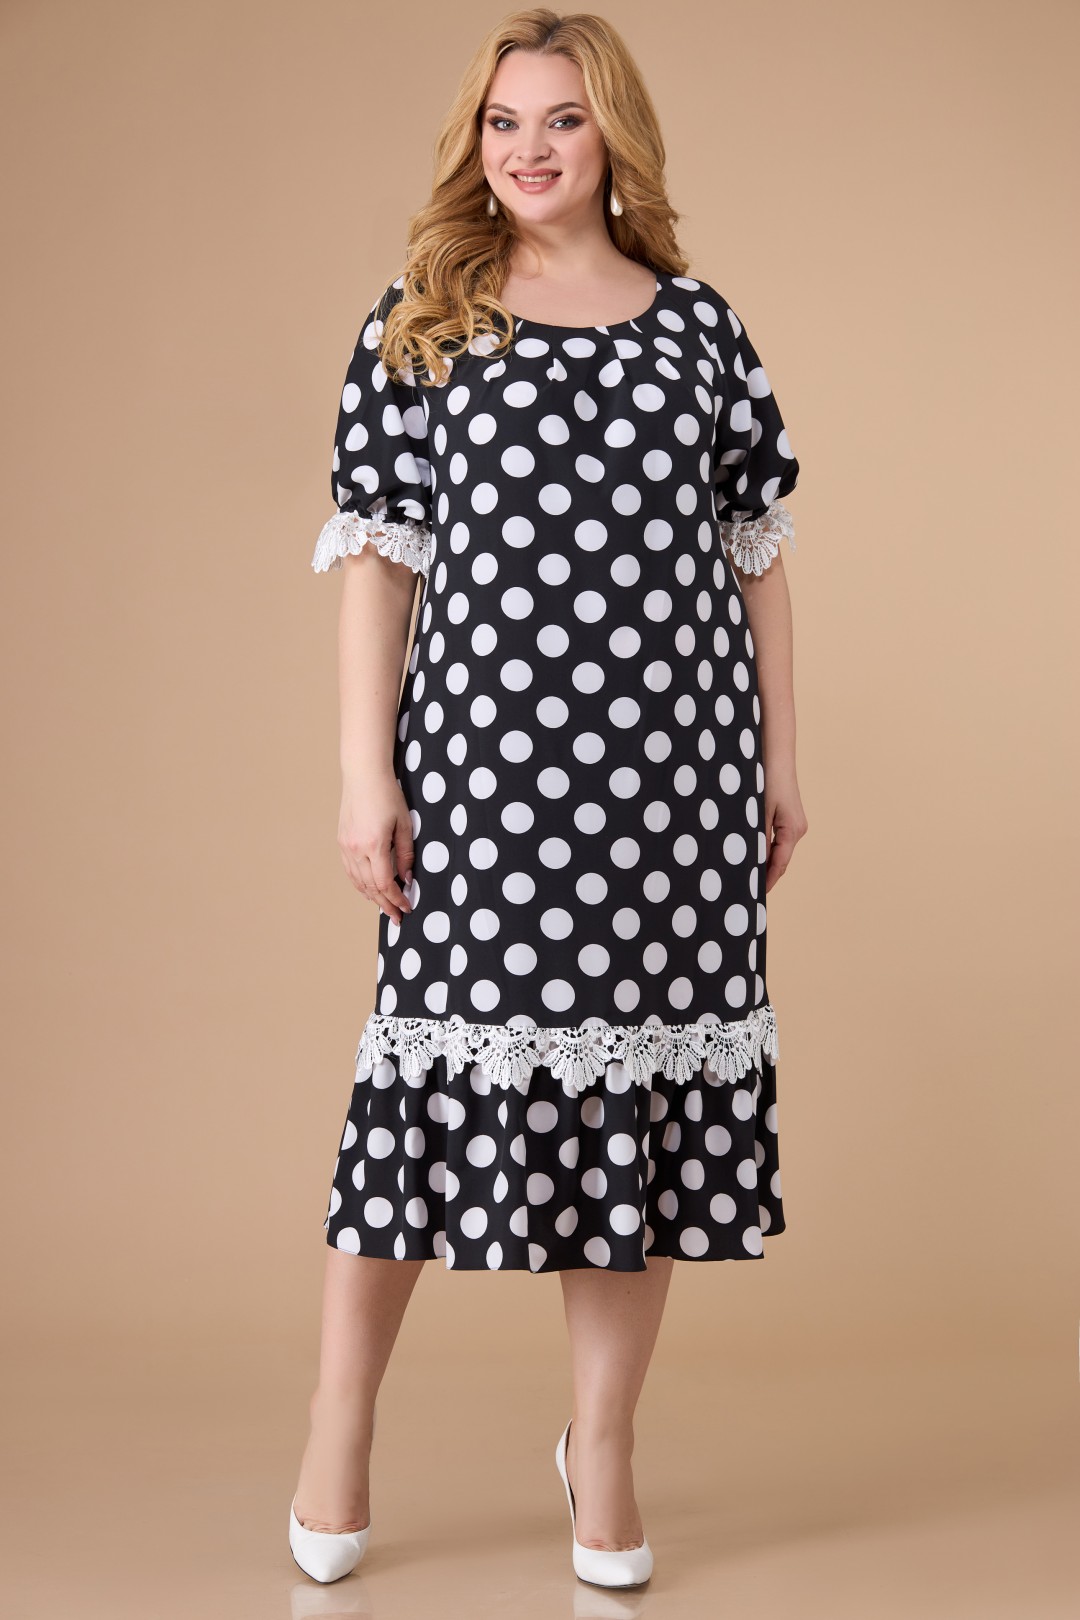 Платье Светлана-Стиль 1541 черный + белый горох